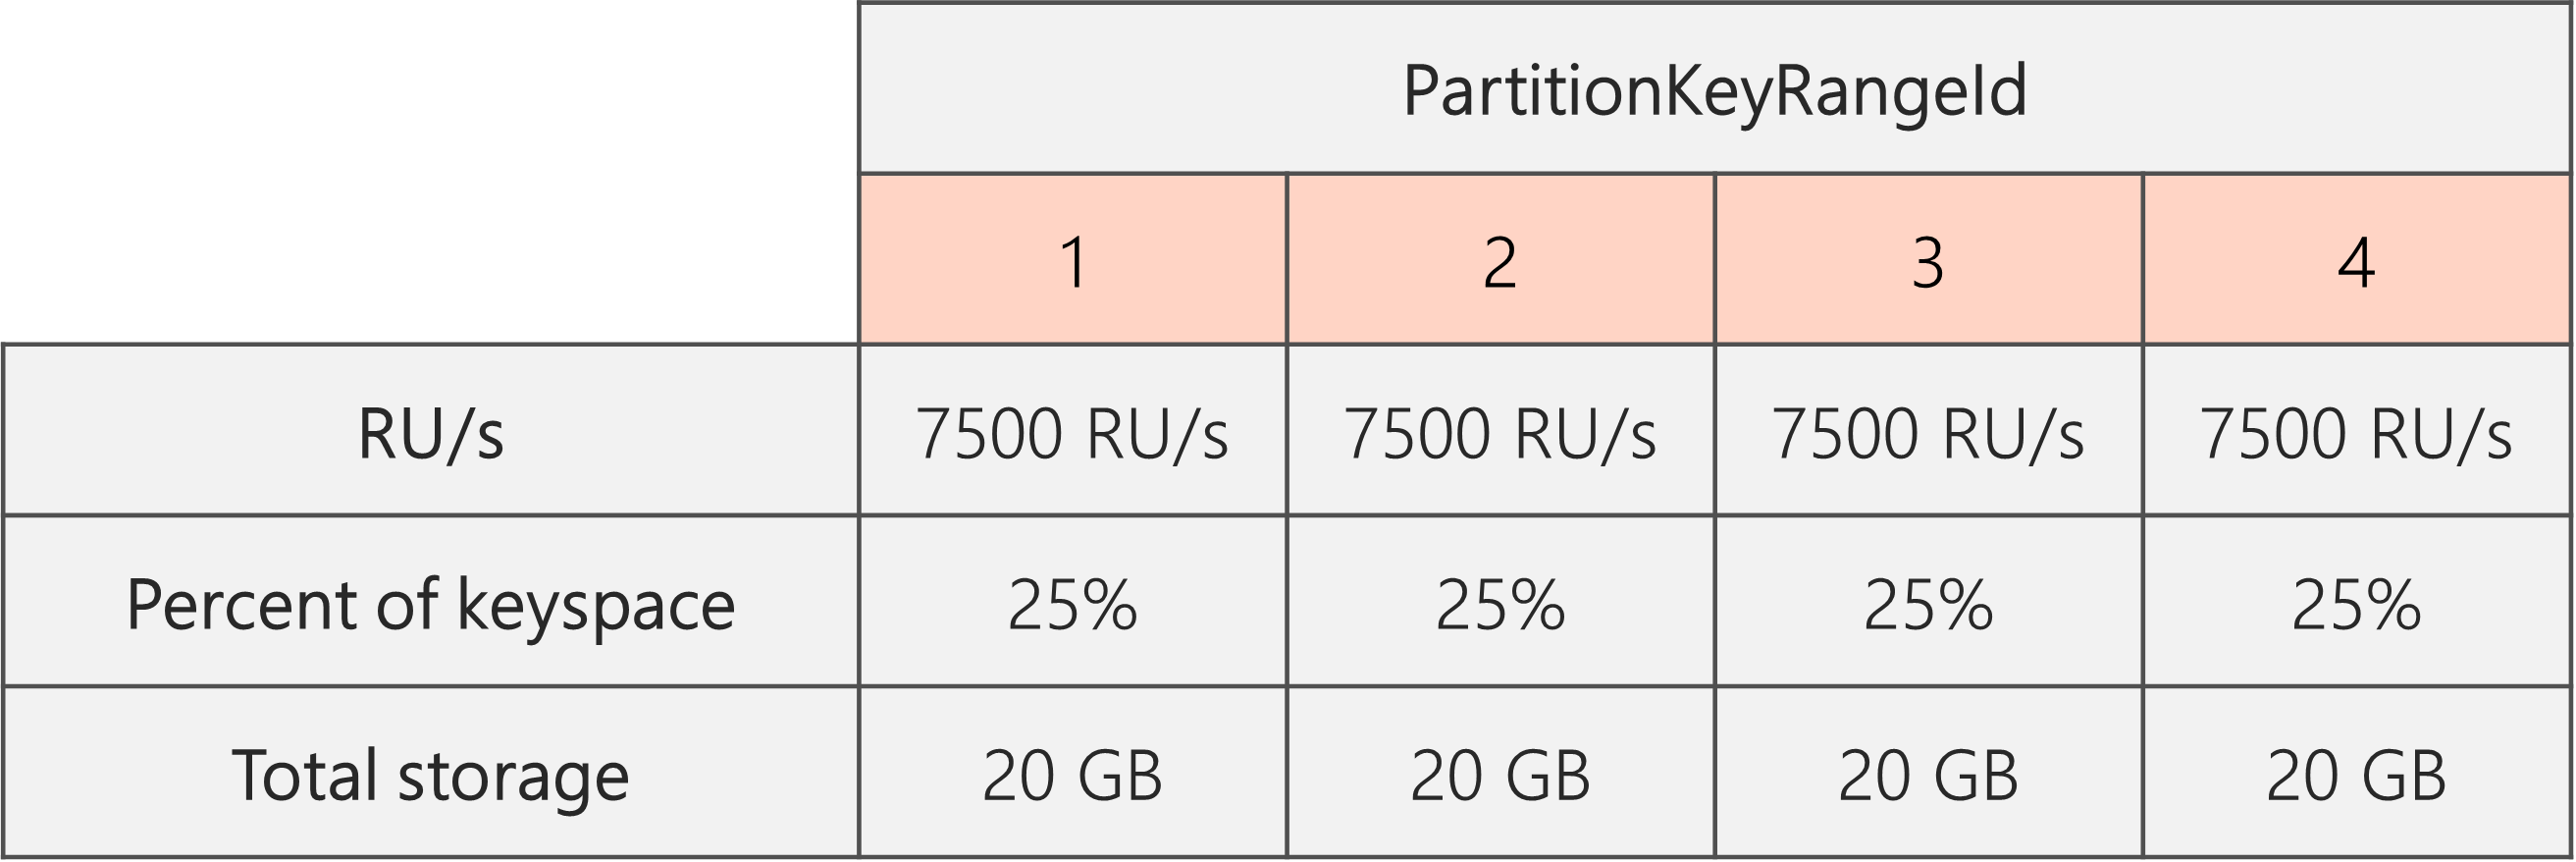 Po dokončení rozdělení a počet RU/s se sníží z 40 000 RU/s na 30 000 RU/s, existují 4 Identifikátory PartitionKeyRangeId, z nichž každý má 7500 RU/s a 25 % celkového prostoru klíčů (20 GB).